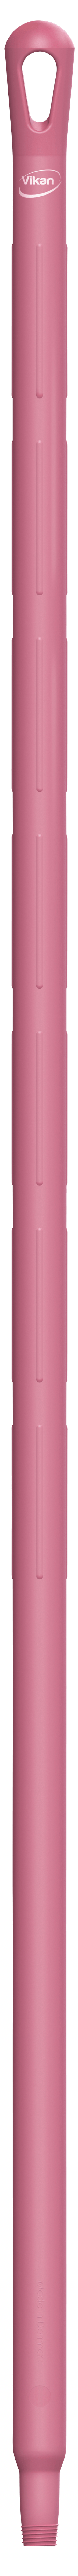 Vikan Ultra Hygiene Steel 1500mm 29621 roze